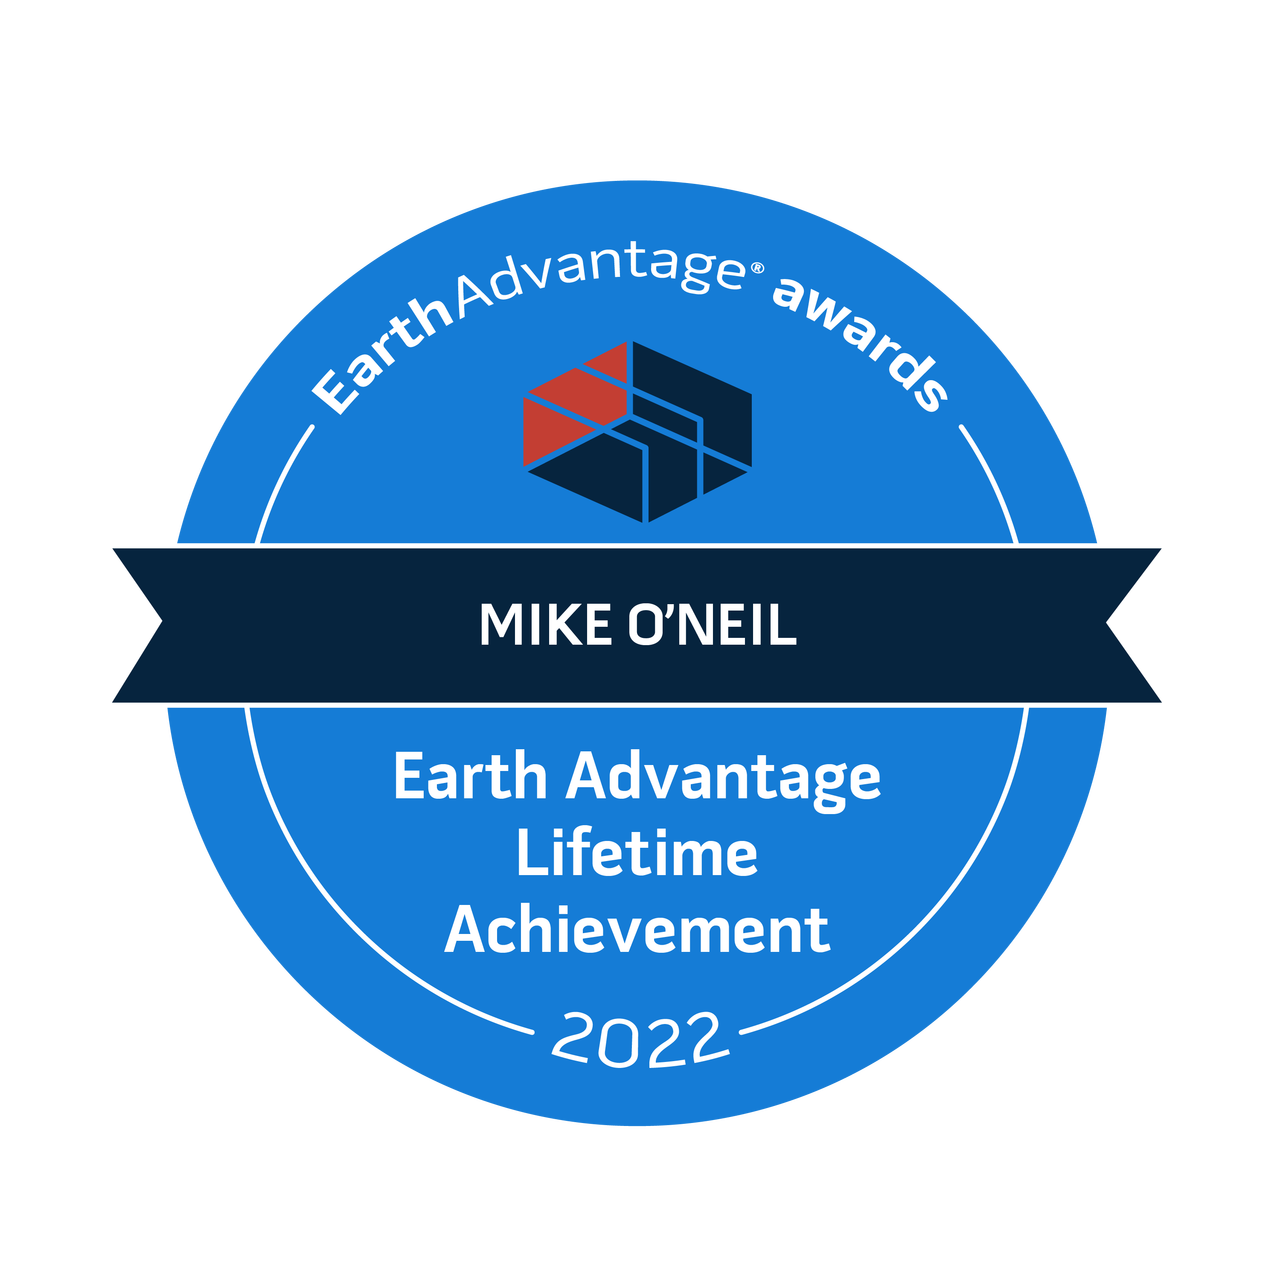 Earth Advantage Lifetime Achievement